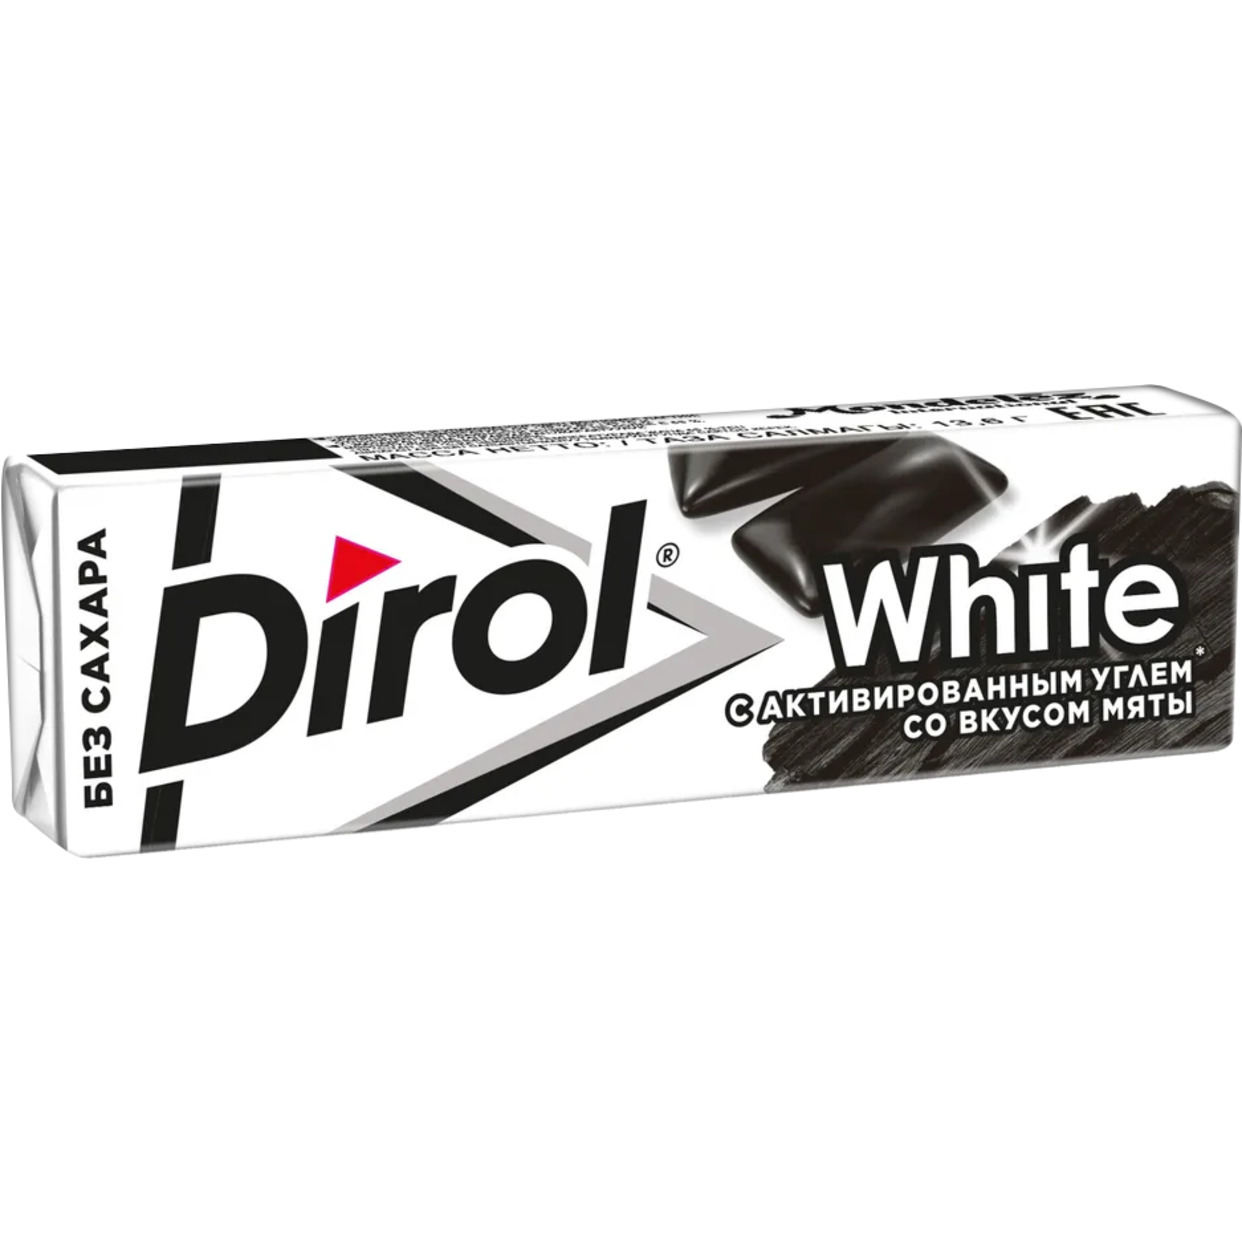 Dirol White - Жевательная резинка без сахара с углем растительным и вкусом мяты, 13.6г